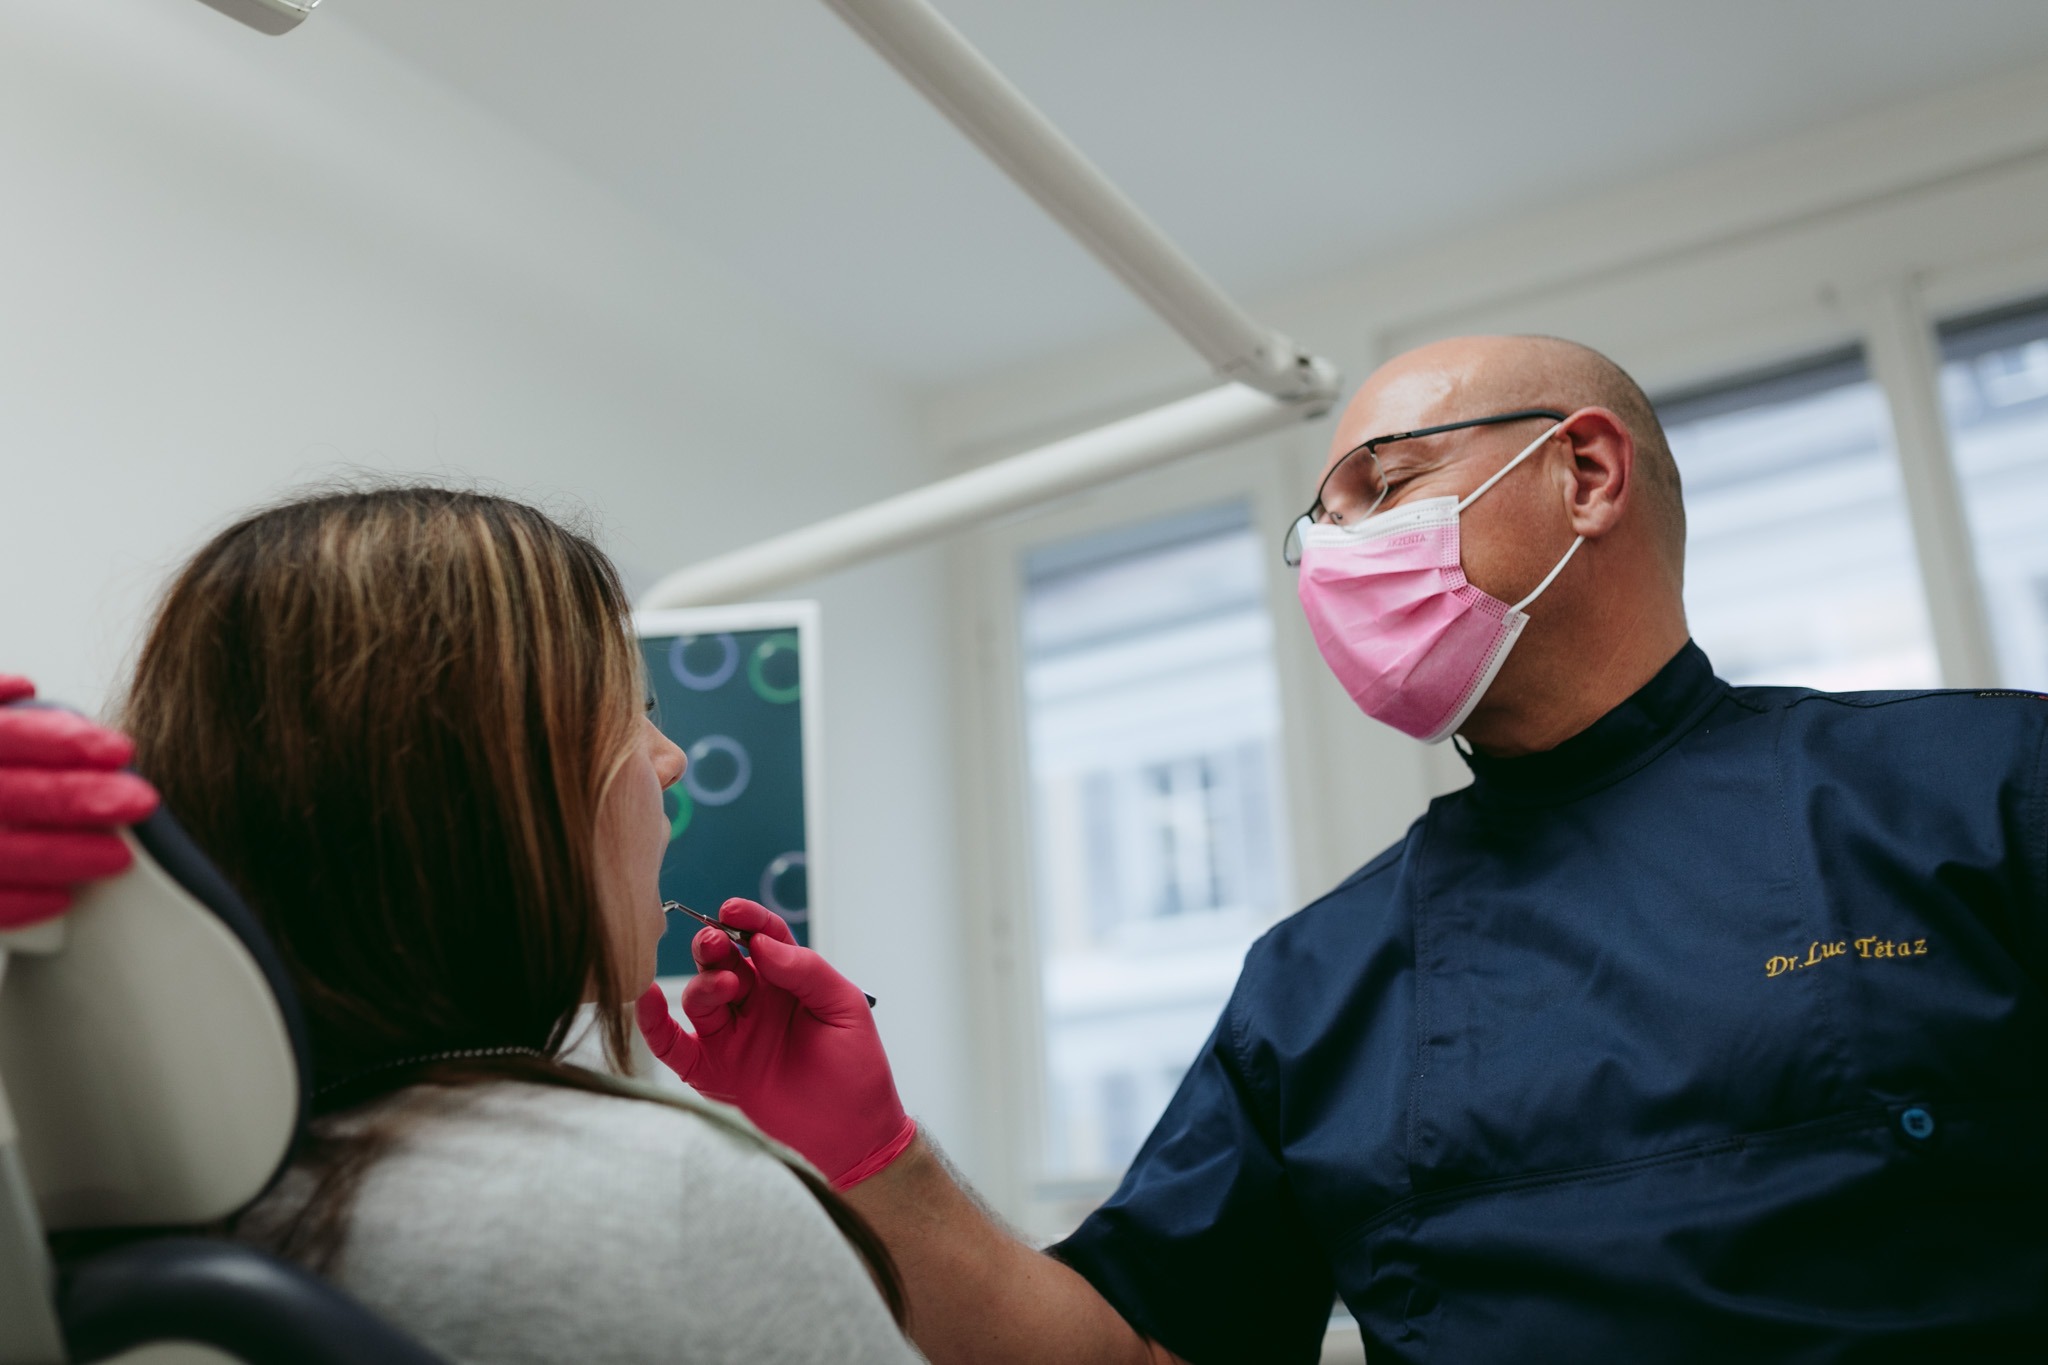 Dr Luc Tétaz procédant à des soins dentaires sur une patiente